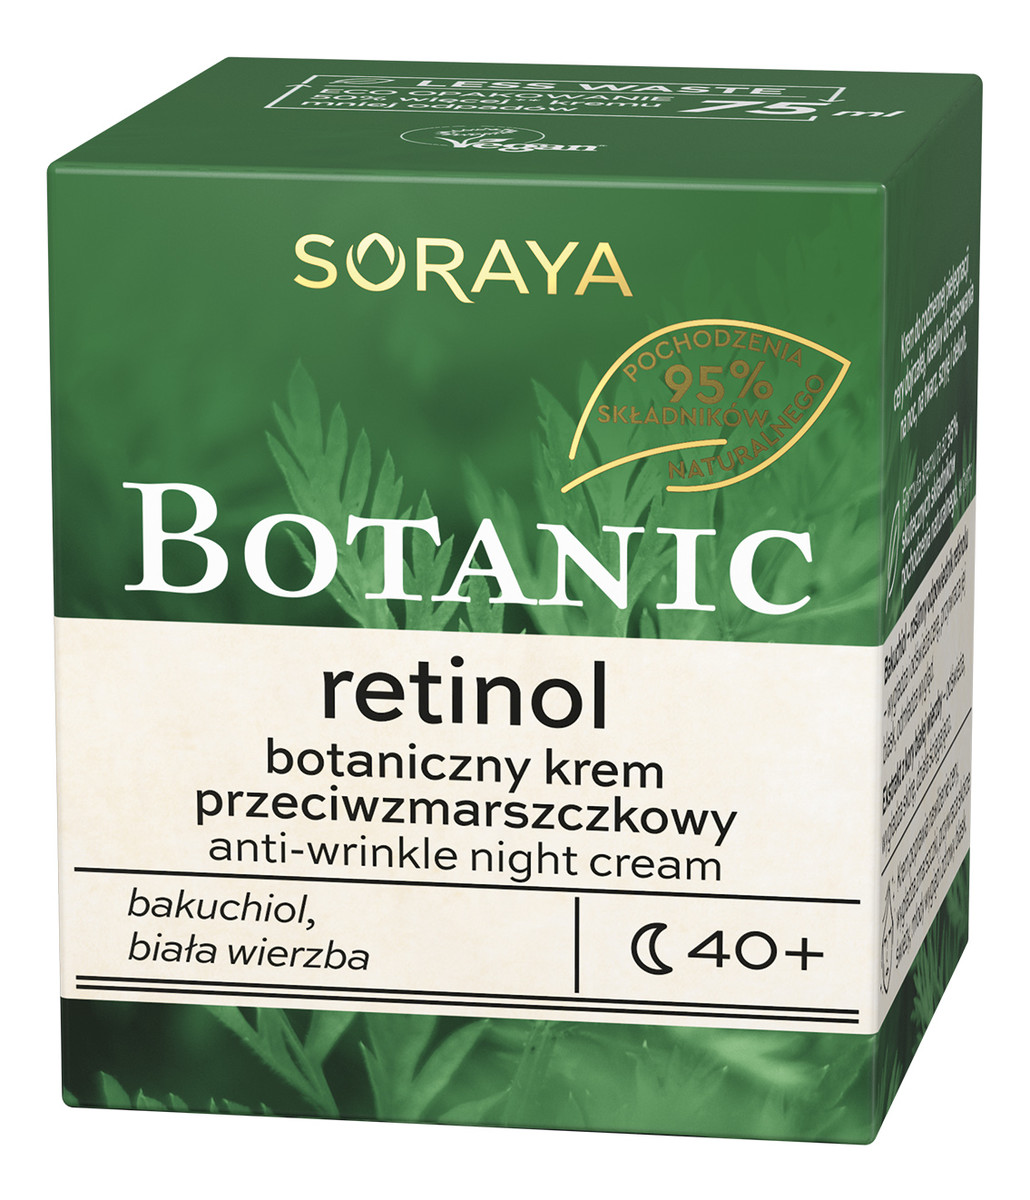 Retinol 40+ botaniczny krem przeciwzmarszczkowy na noc